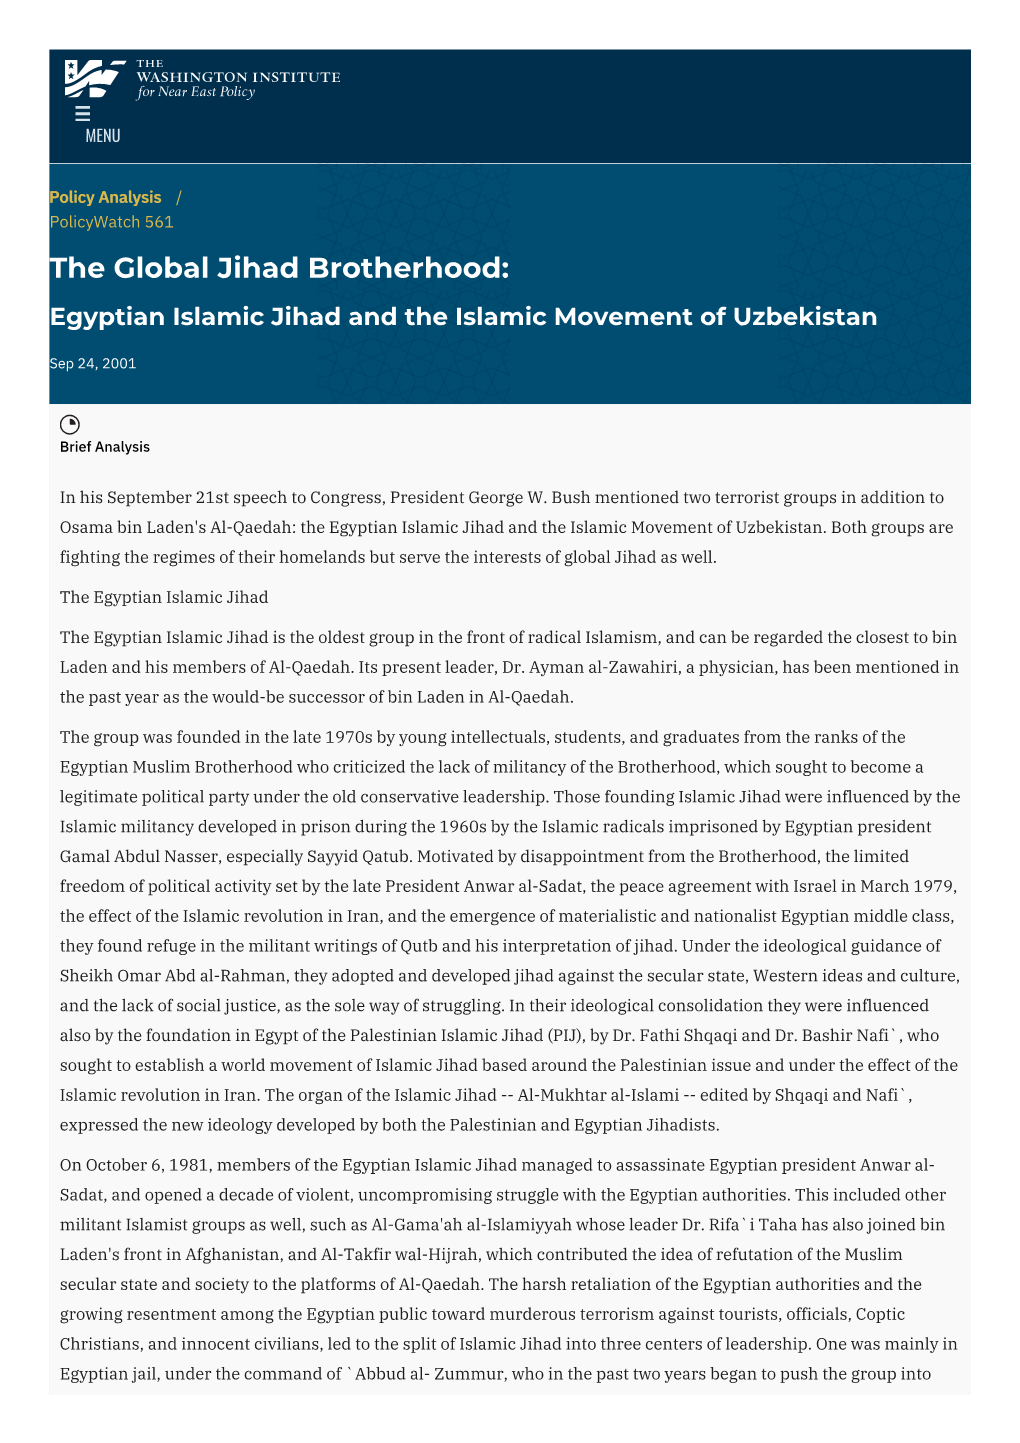 Egyptian Islamic Jihad and the Islamic Movement of Uzbekistan